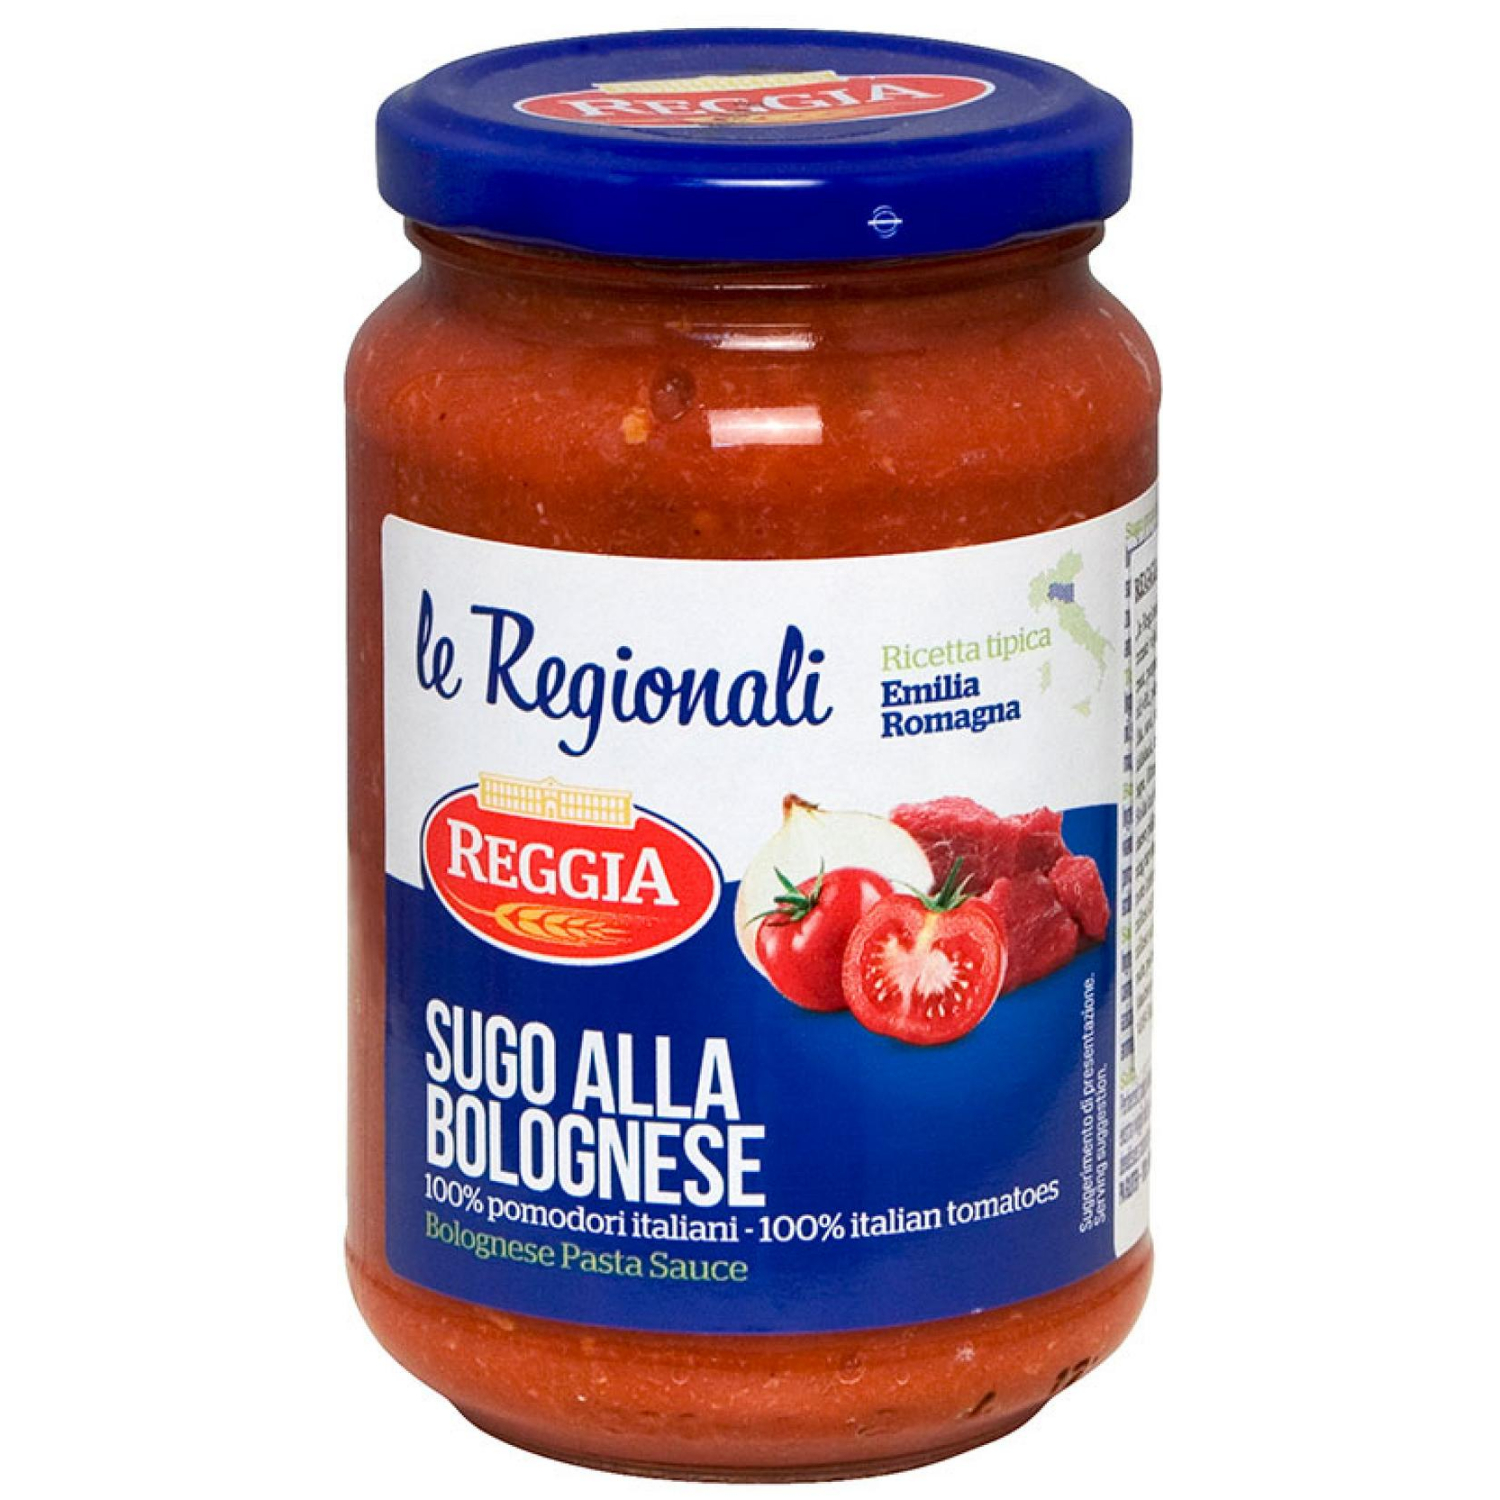 Sos boloński Reggia (350g) - pomidory, wołowina, wieprzowina, tradycyjny smak. Idealny do spaghetti, tagliatelle, penne. Bez konserwantów.